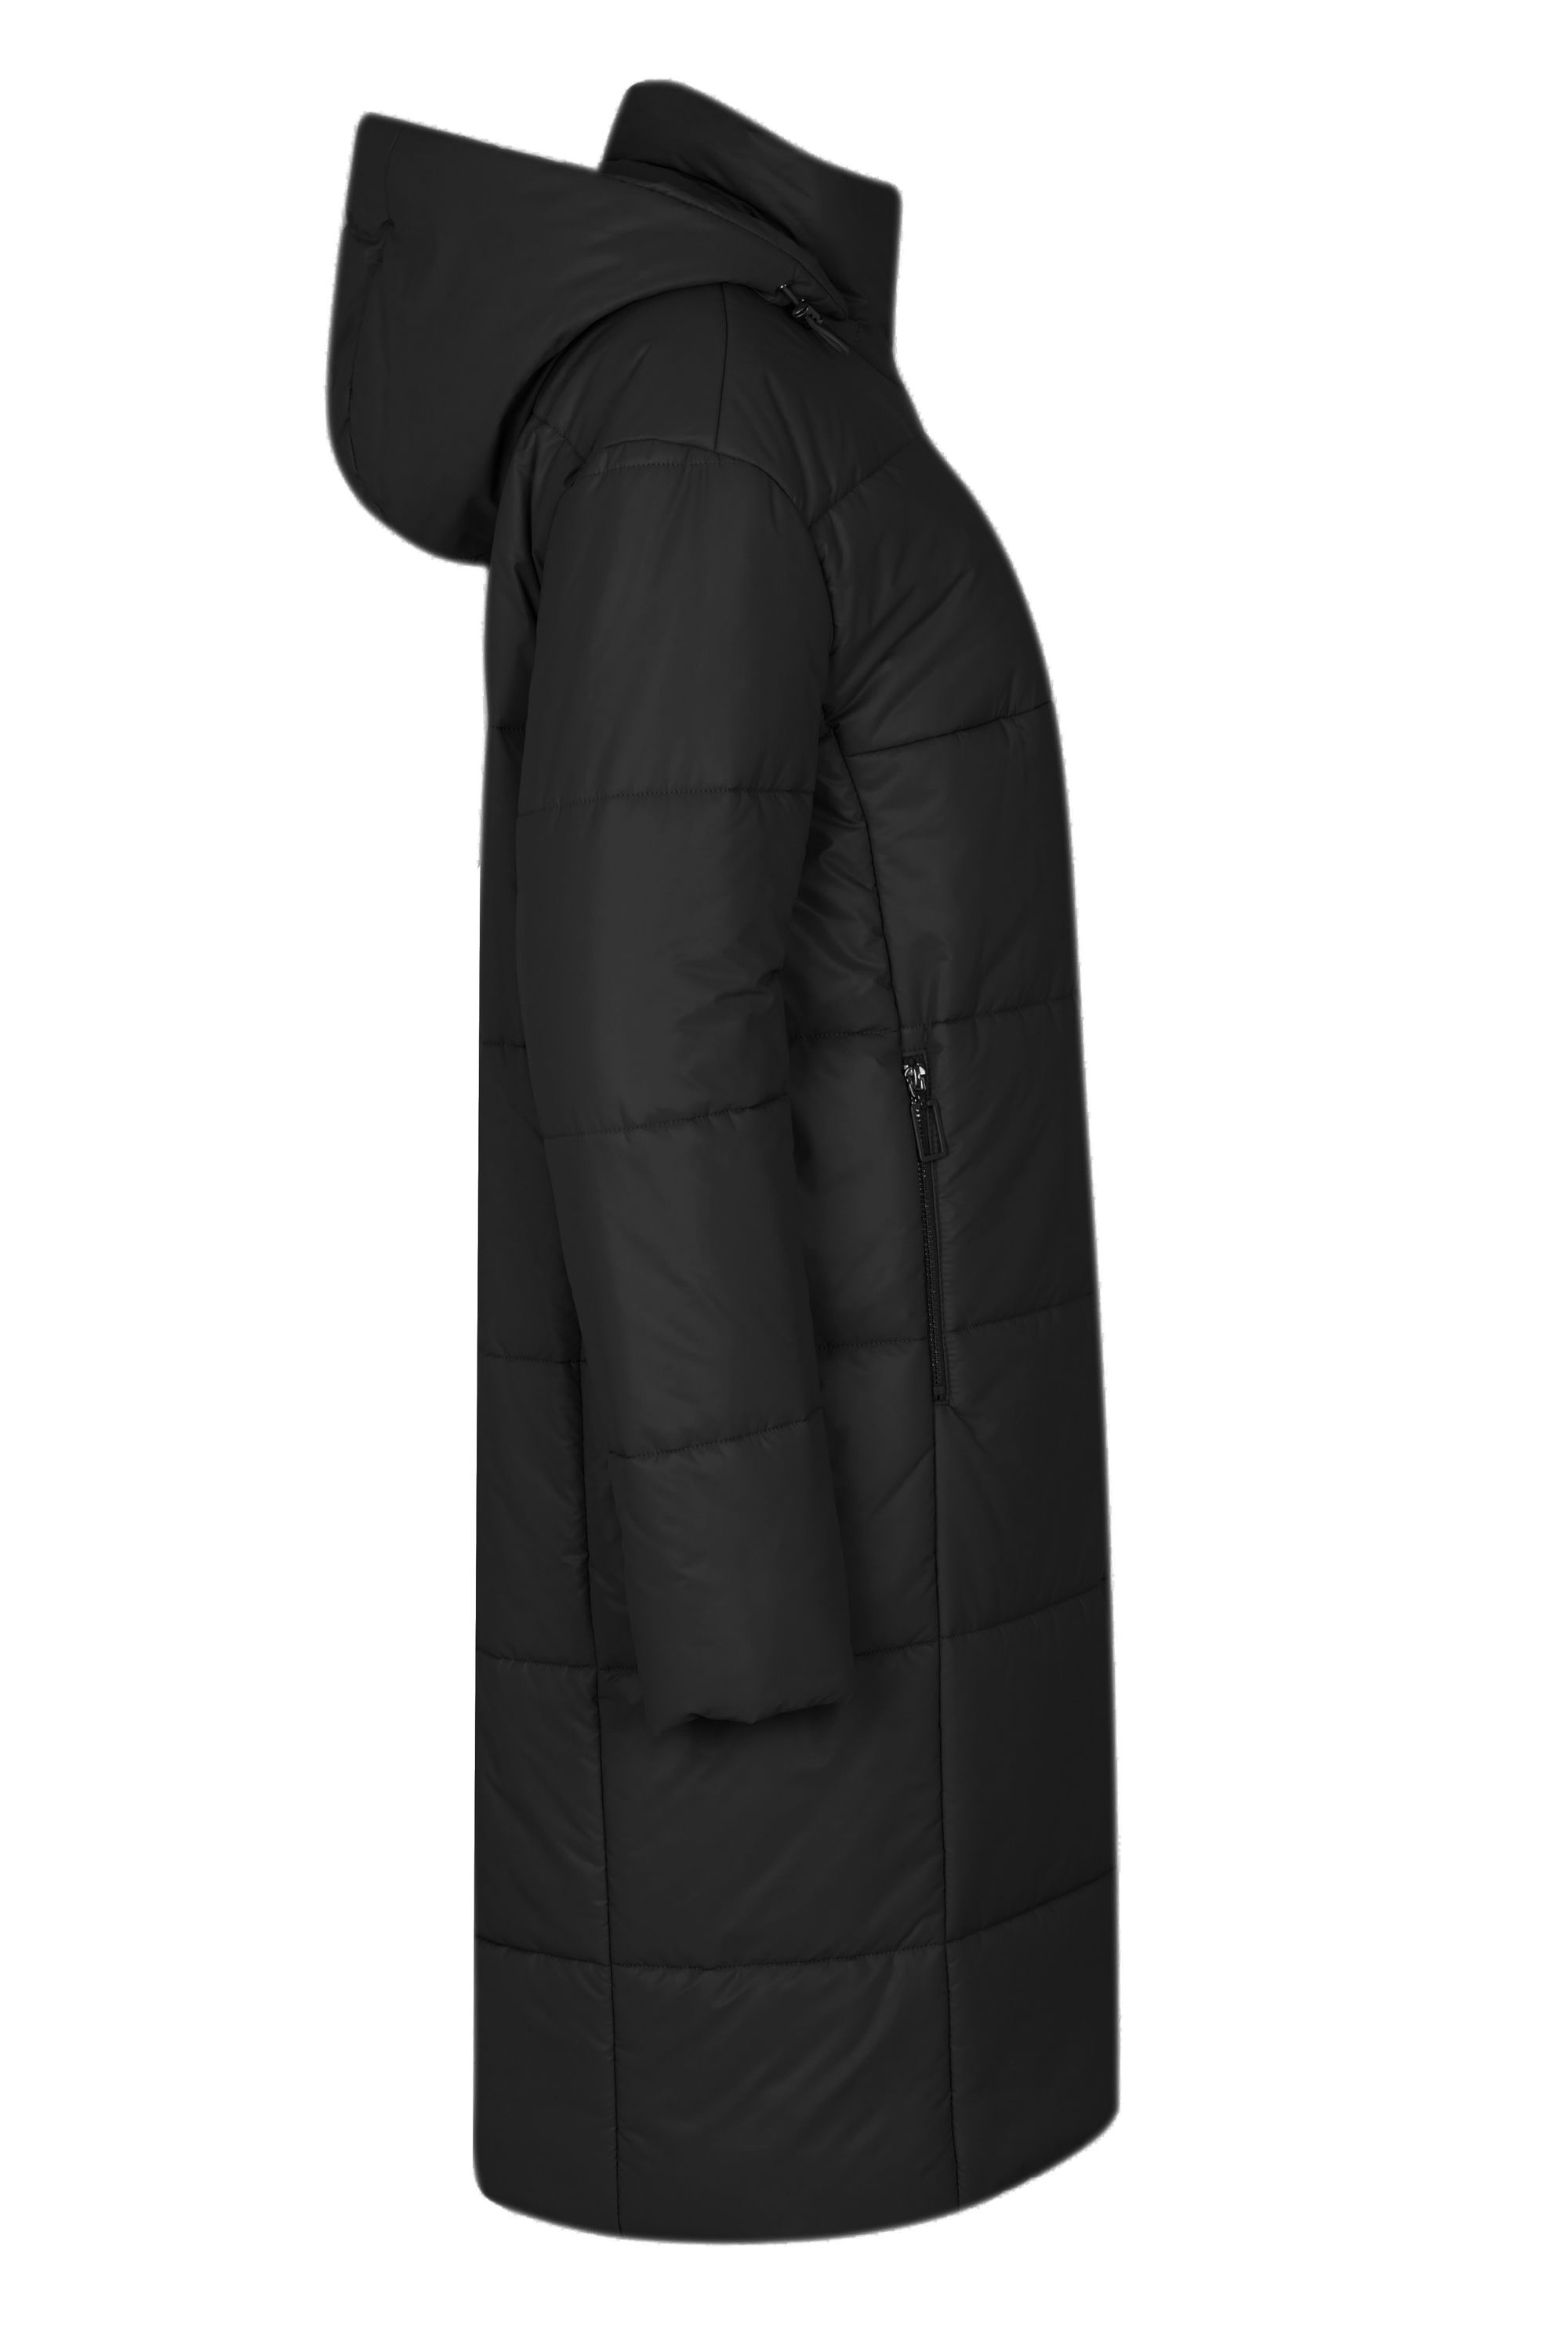 Пальто женское плащевое утепленное 5-12327-1. Фото 2.